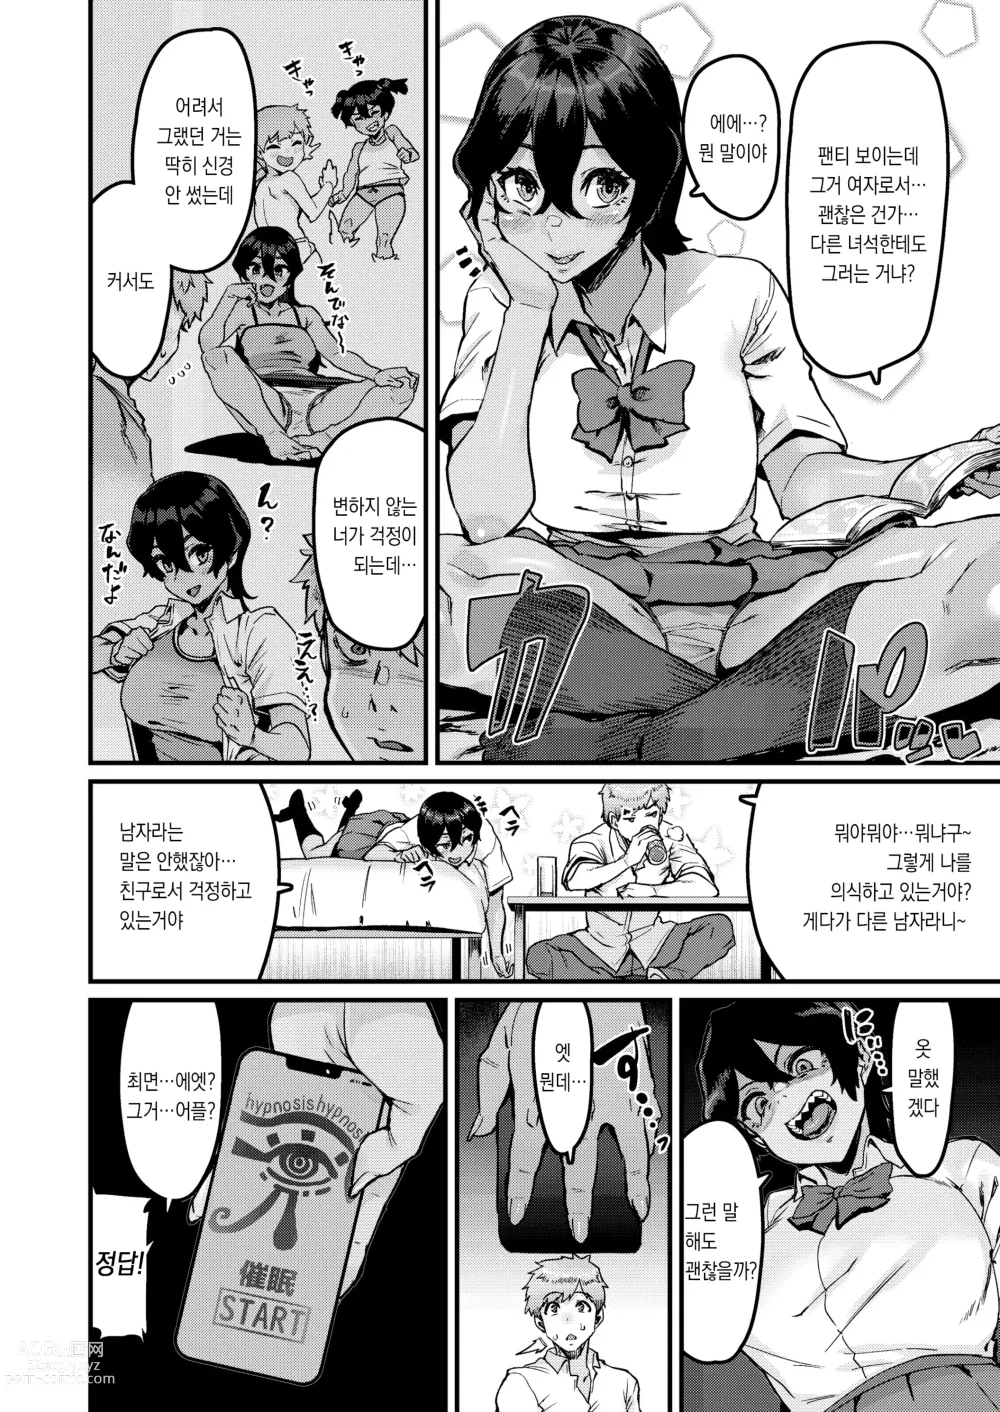 Page 6 of doujinshi 쪽이 계속 전부터 좋아했는데